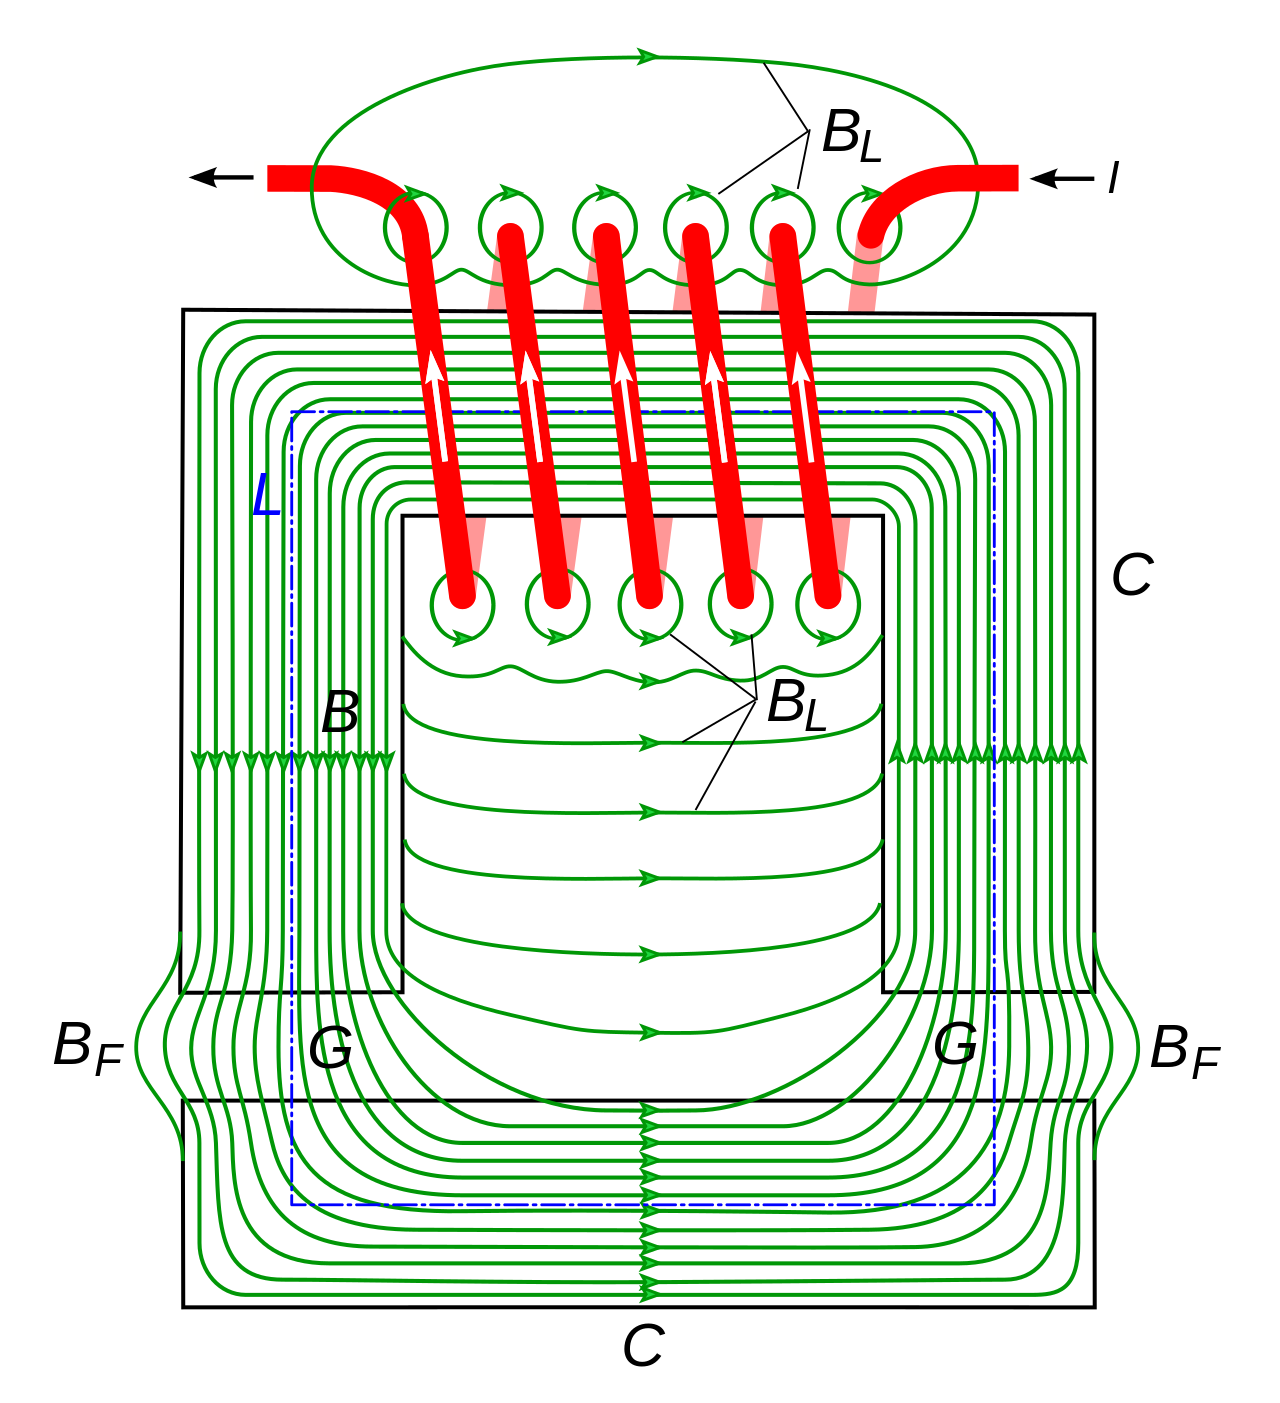 Пол трансформатора. Магнитное поле электромагнита. Магнитное поле в сердечнике трансформатора. Магнитное поле сердечника электромагнита. Магнитные линии в трансформаторе.